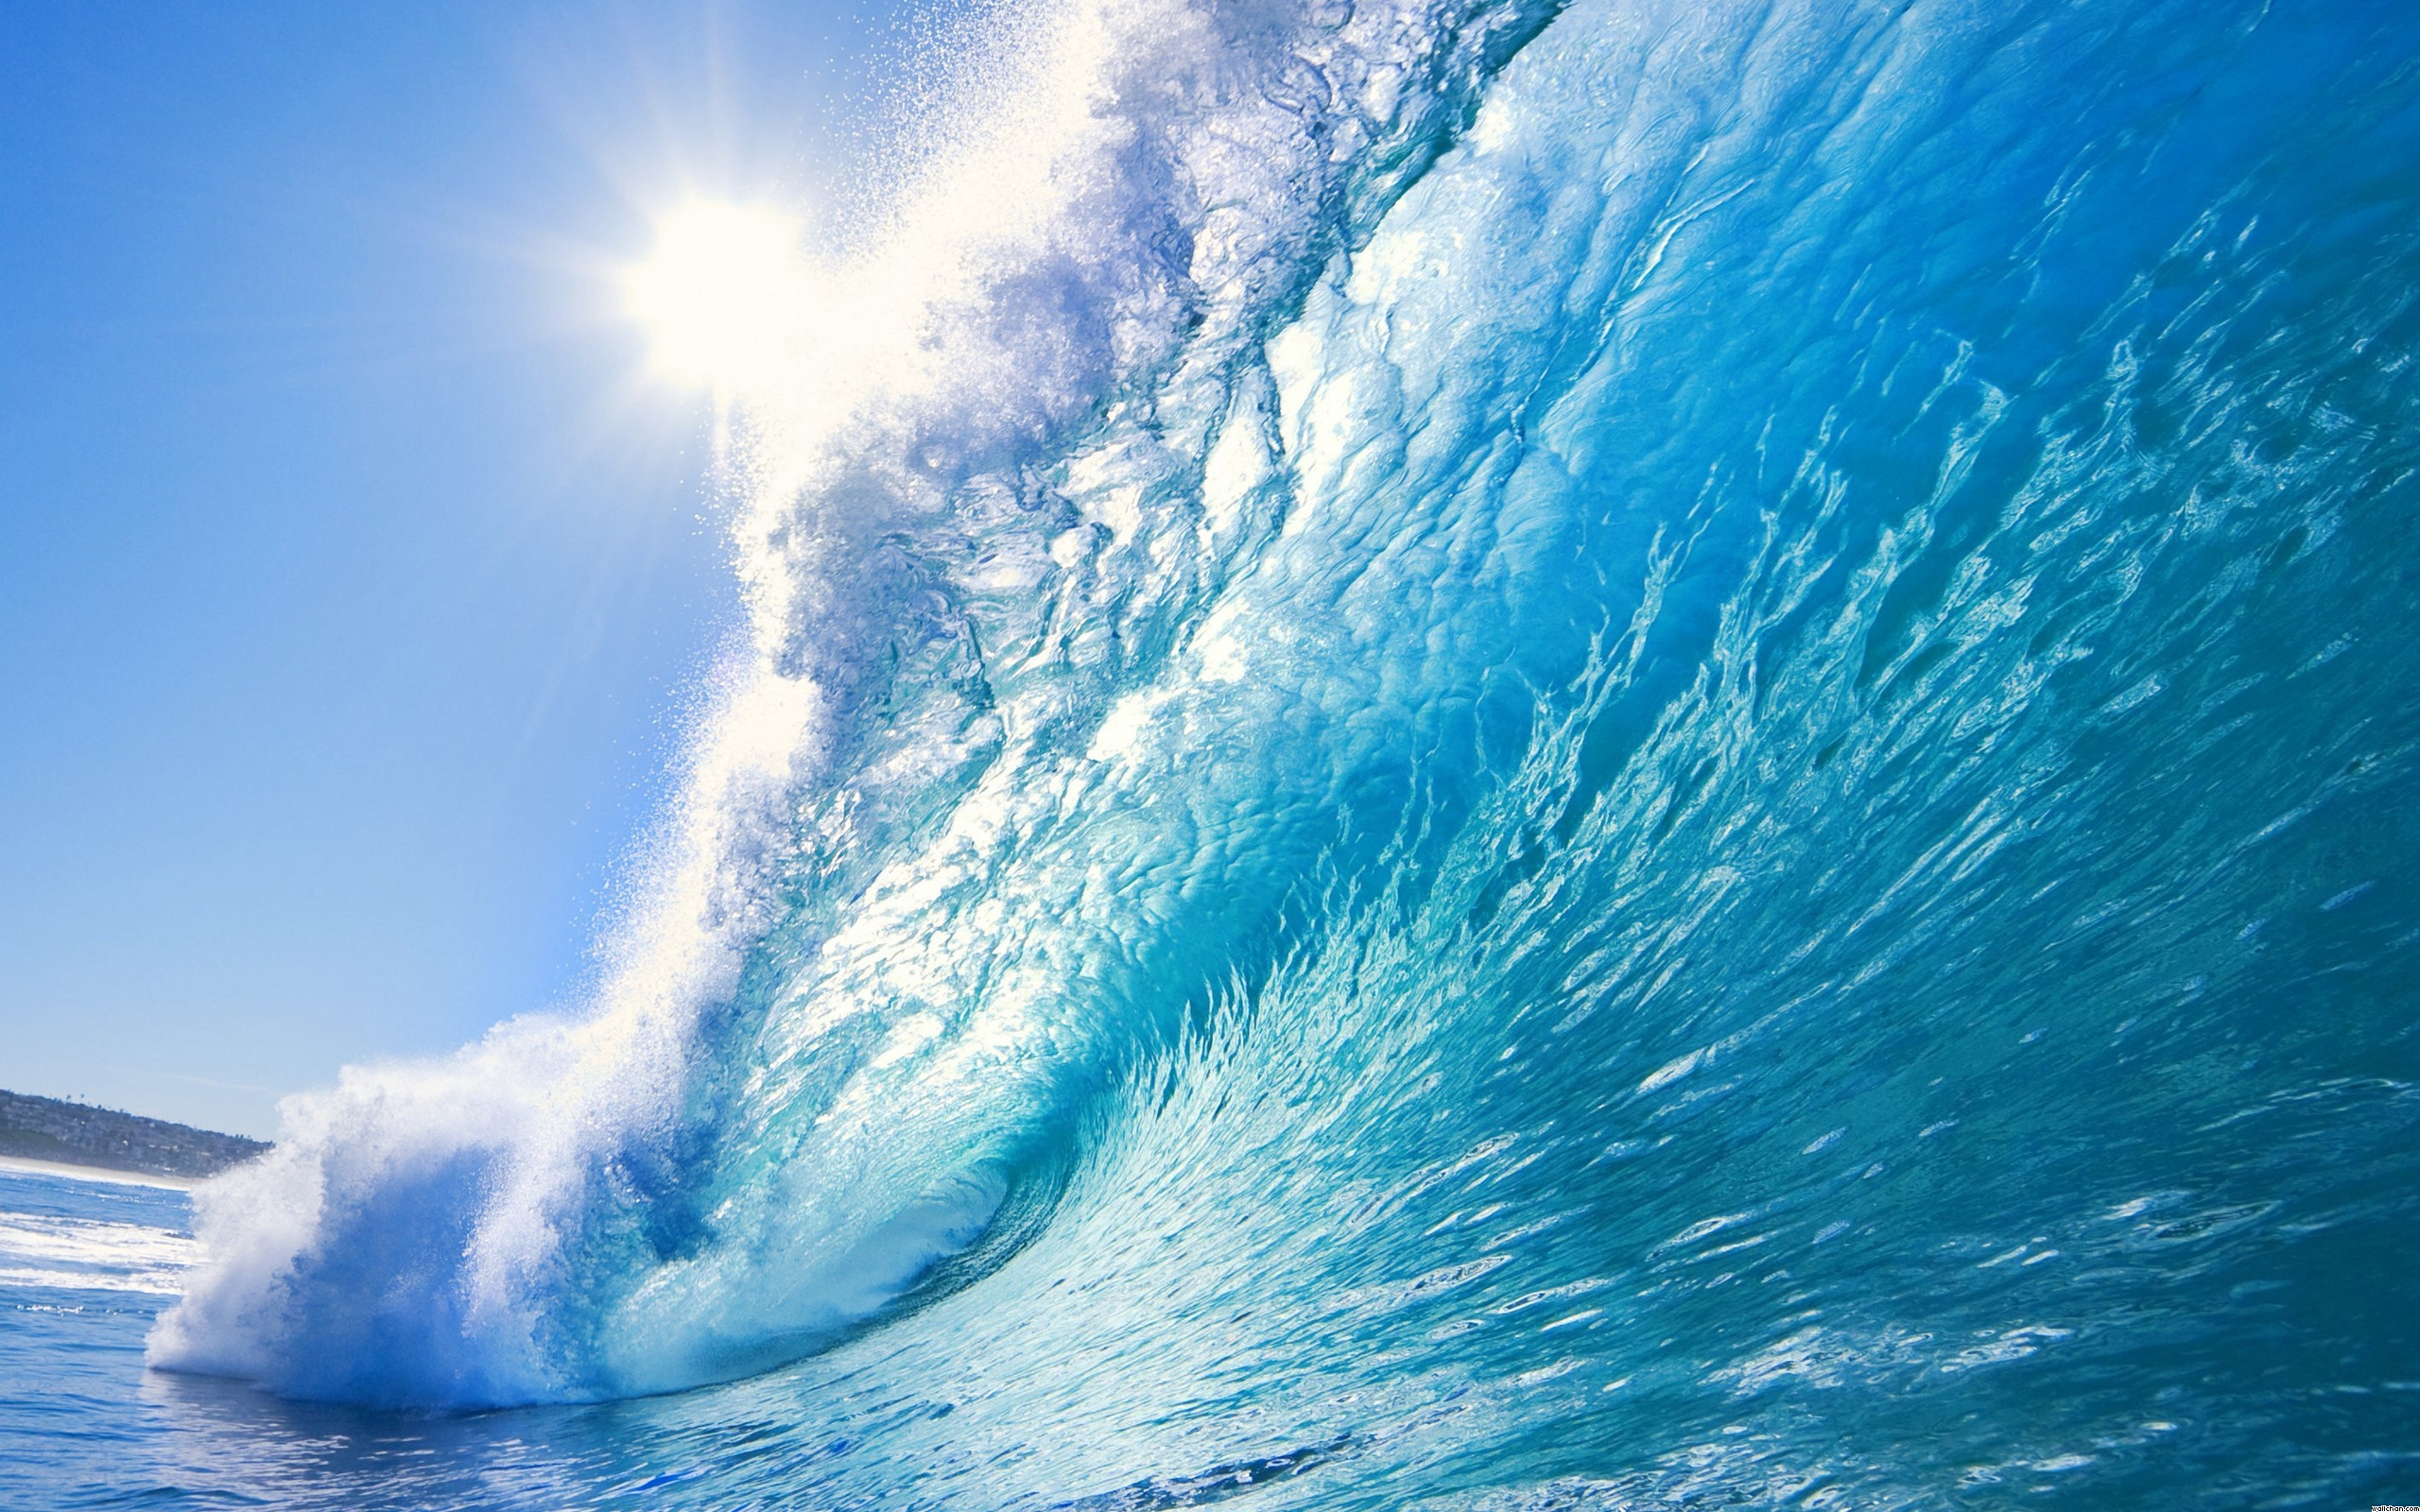 16554-wave-sea-water-ocean-splash-photo - Cutwater Inventory Management